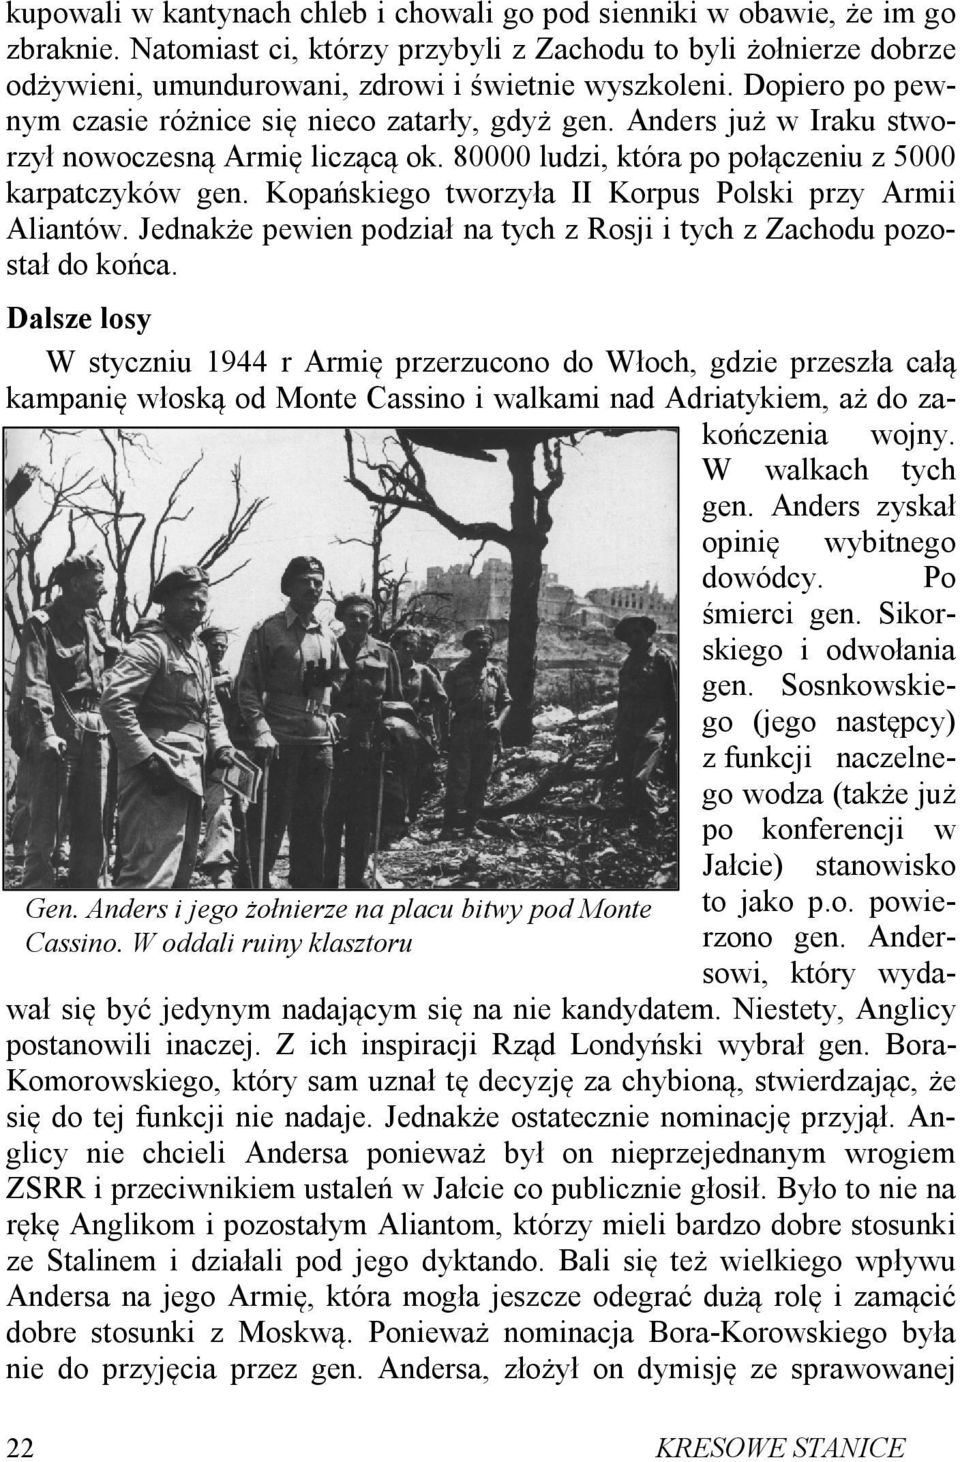 Anders już w Iraku stworzył nowoczesną Armię liczącą ok. 80000 ludzi, która po połączeniu z 5000 karpatczyków gen. Kopańskiego tworzyła II Korpus Polski przy Armii Aliantów.